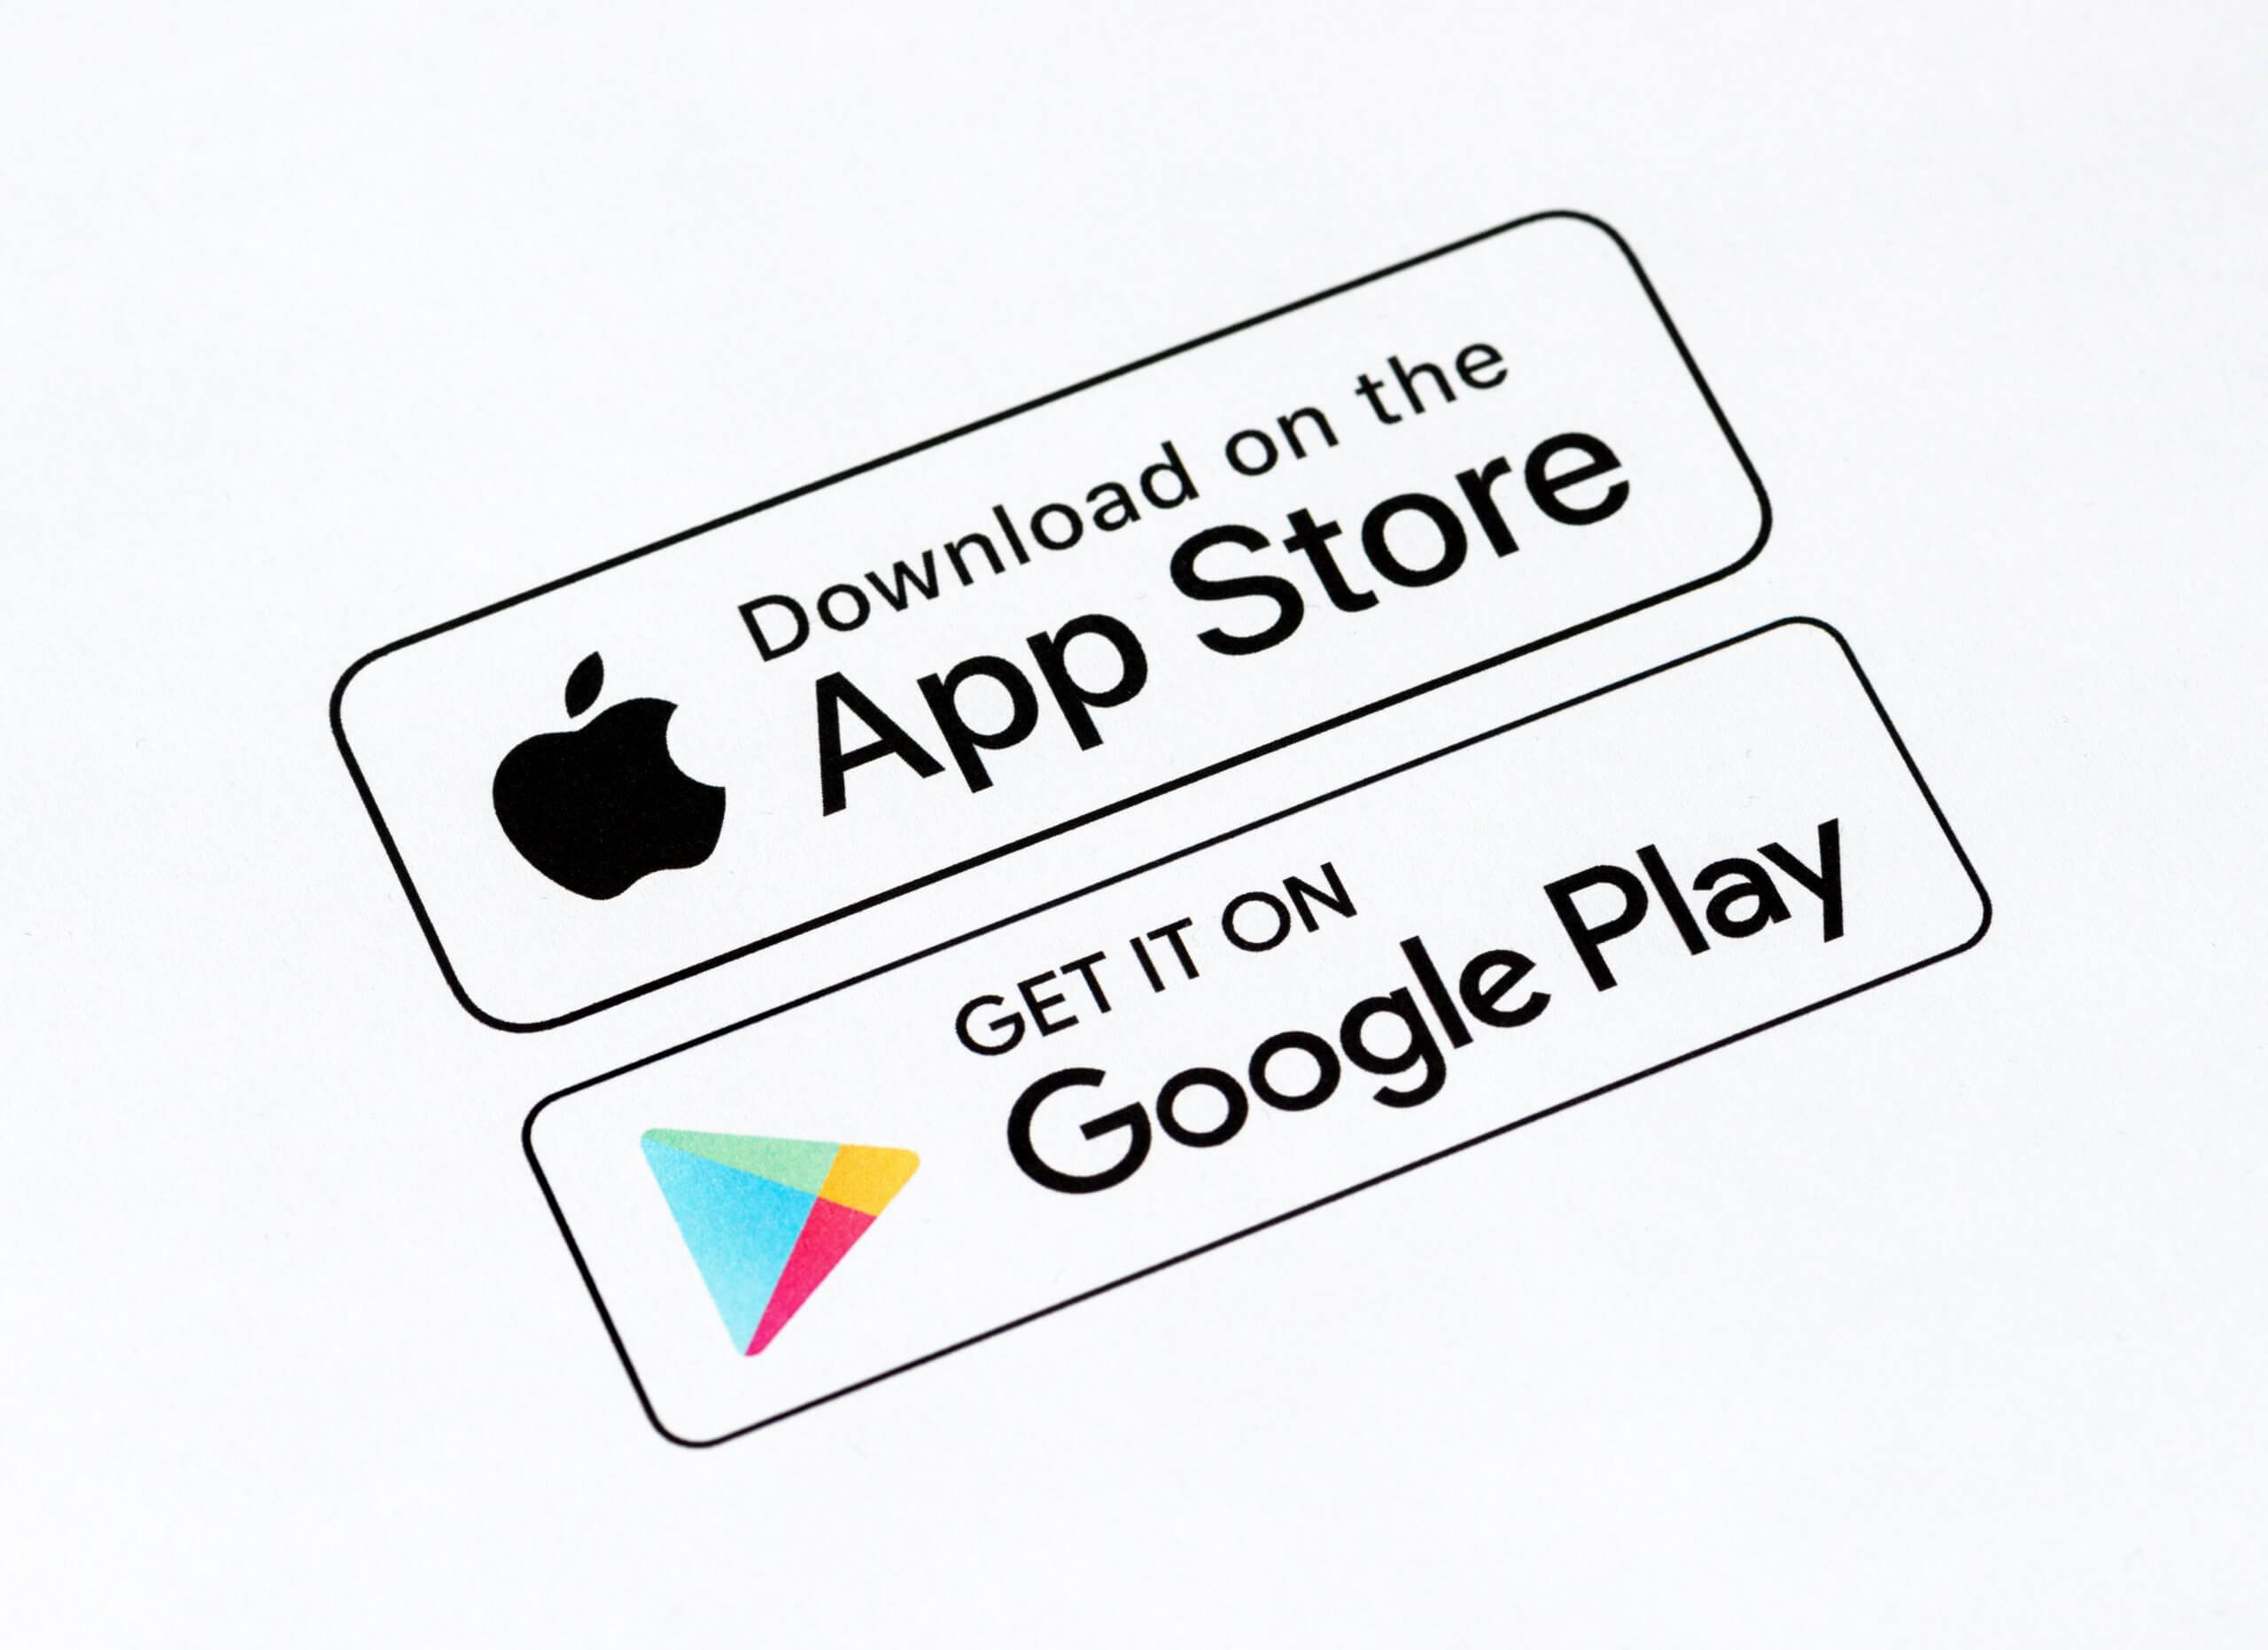 App download stores